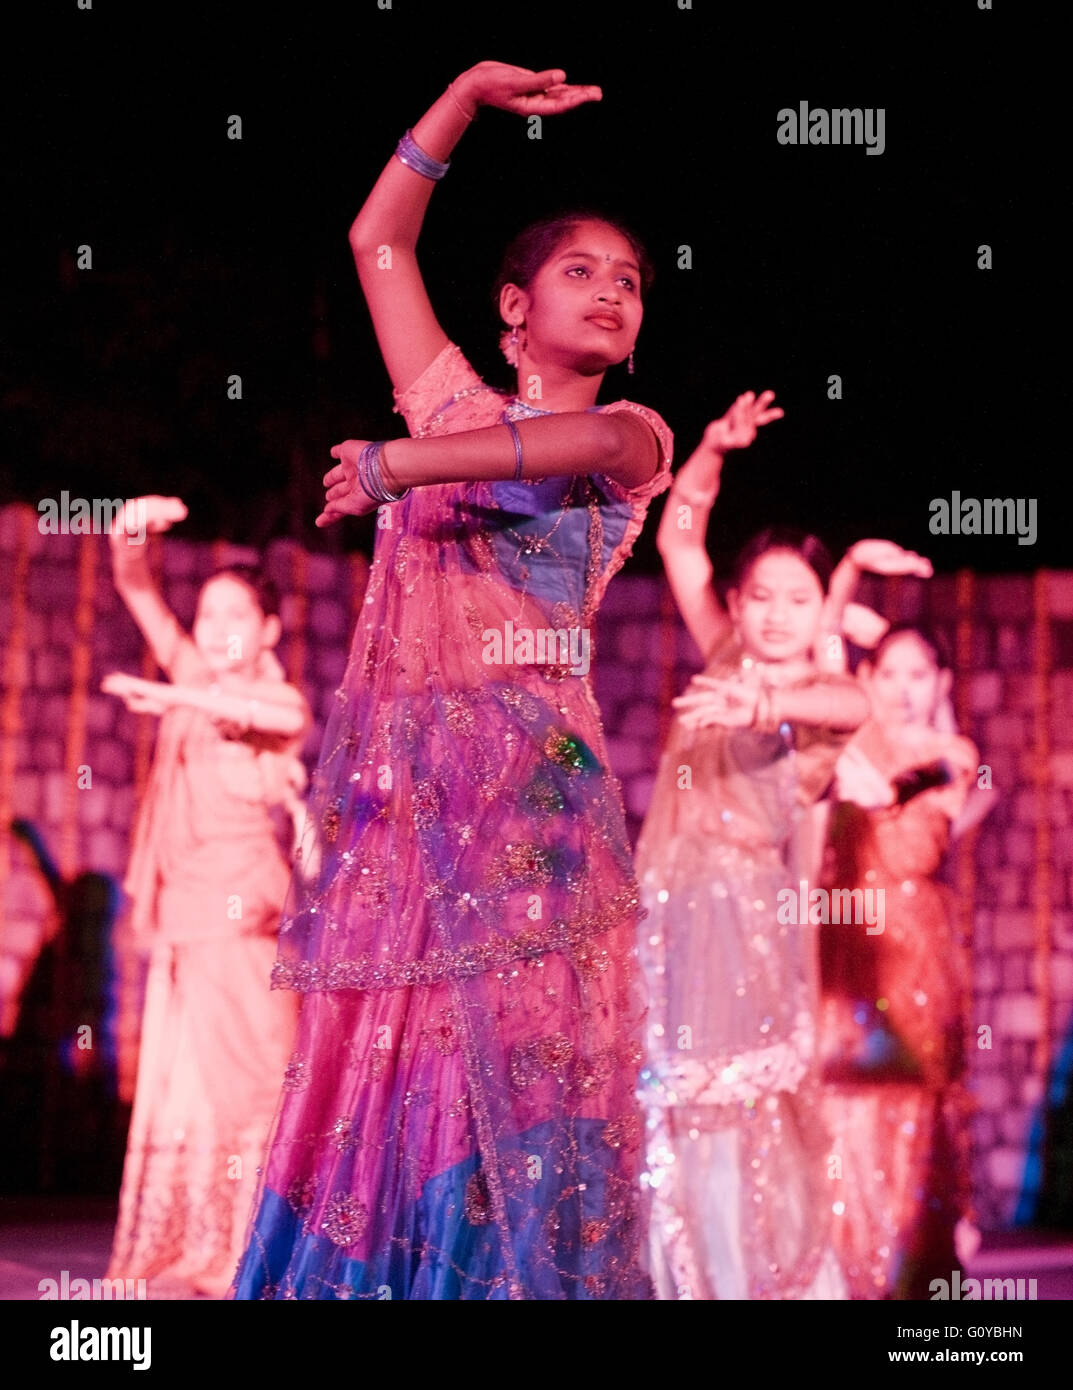 Une troupe de danse locale d'adolescents orphelins effectue des danses folkloriques traditionnelles indiennes. Ananda dans l'Himalaya. L'Inde Banque D'Images